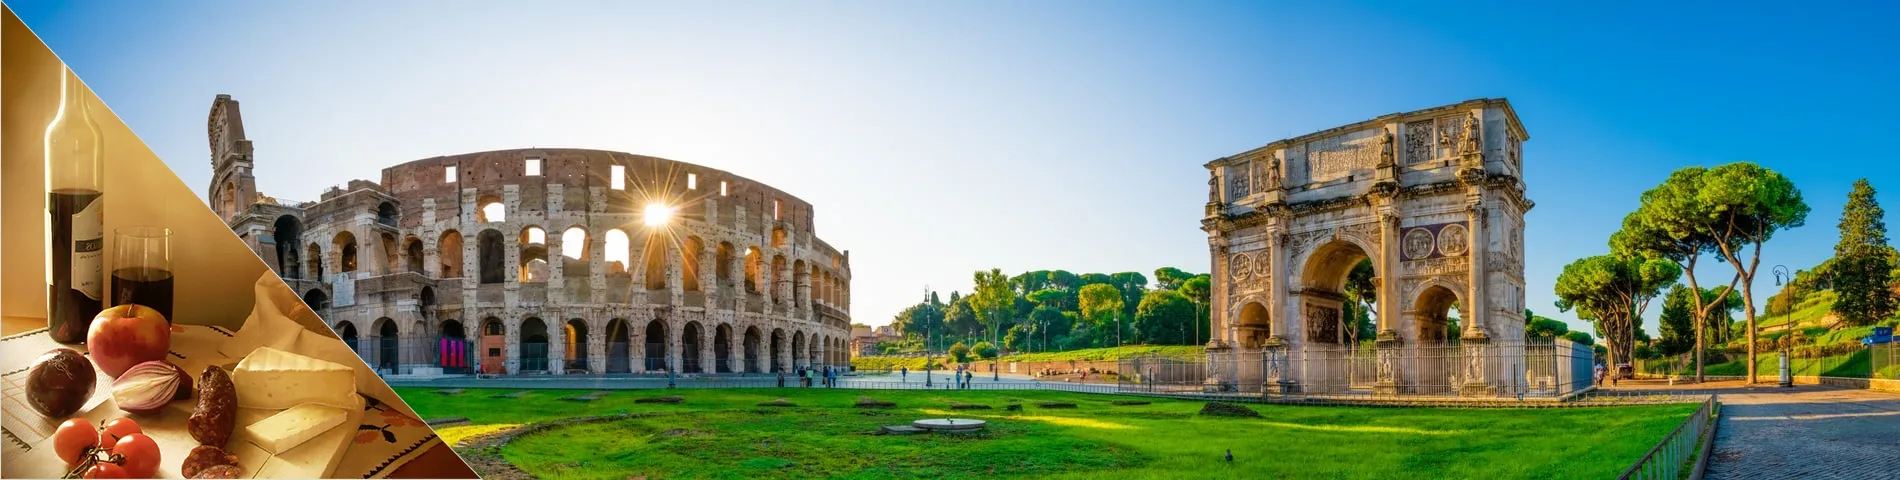 로마 - 이탈리아어 와 문화